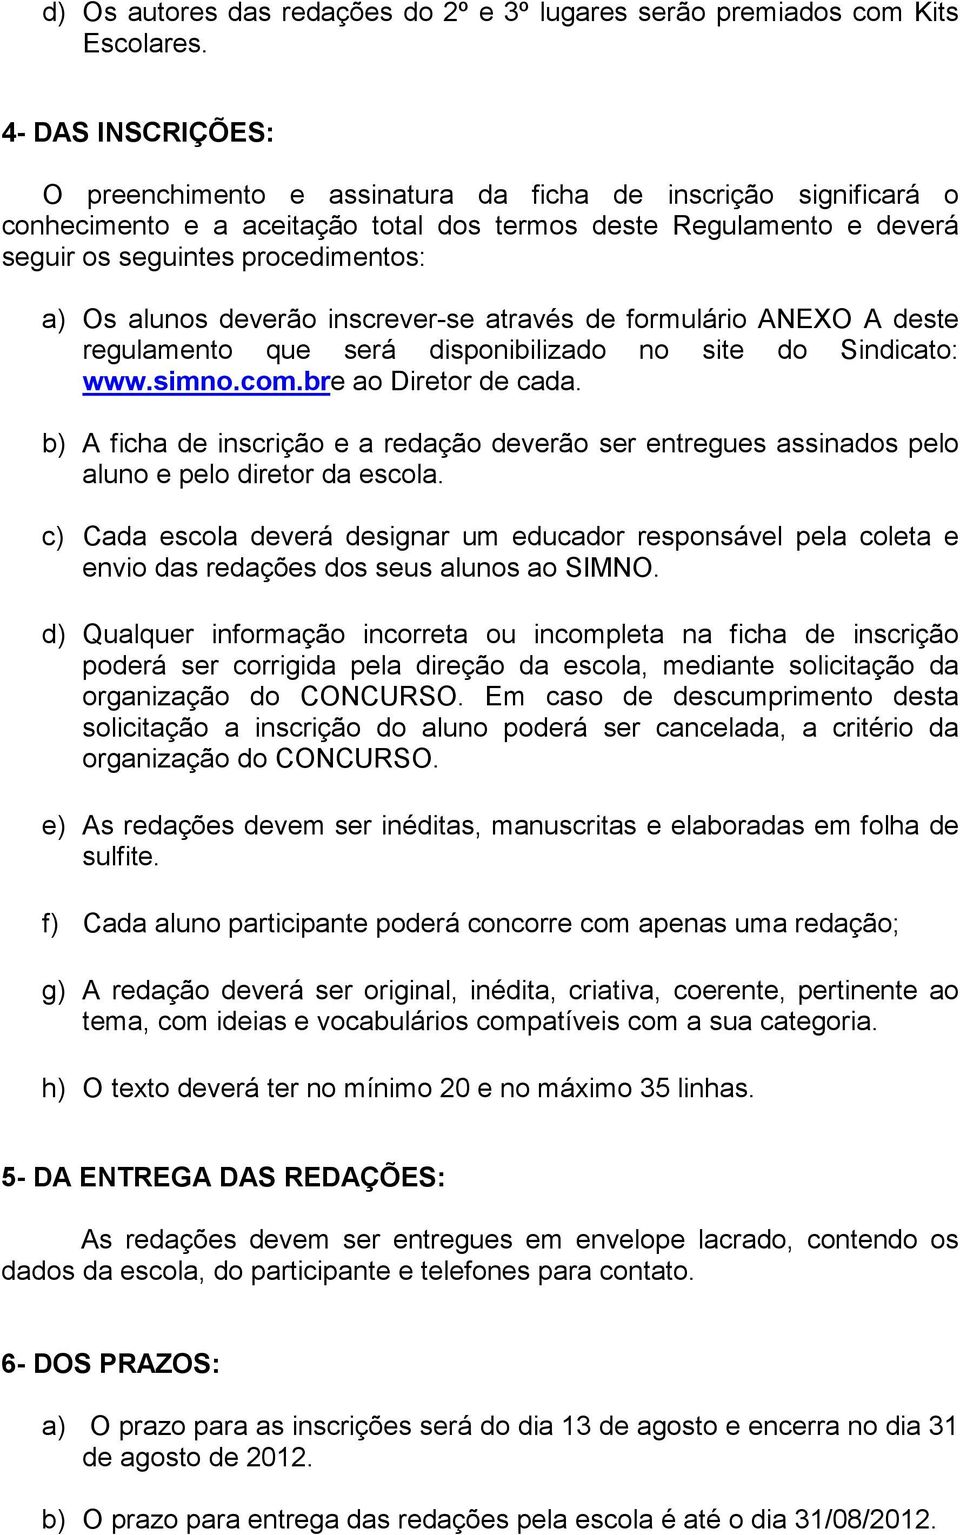 alunos deverão inscrever-se através de formulário ANEXO A deste regulamento que será disponibilizado no site do Sindicato: www.simno.com.bre ao Diretor de cada.